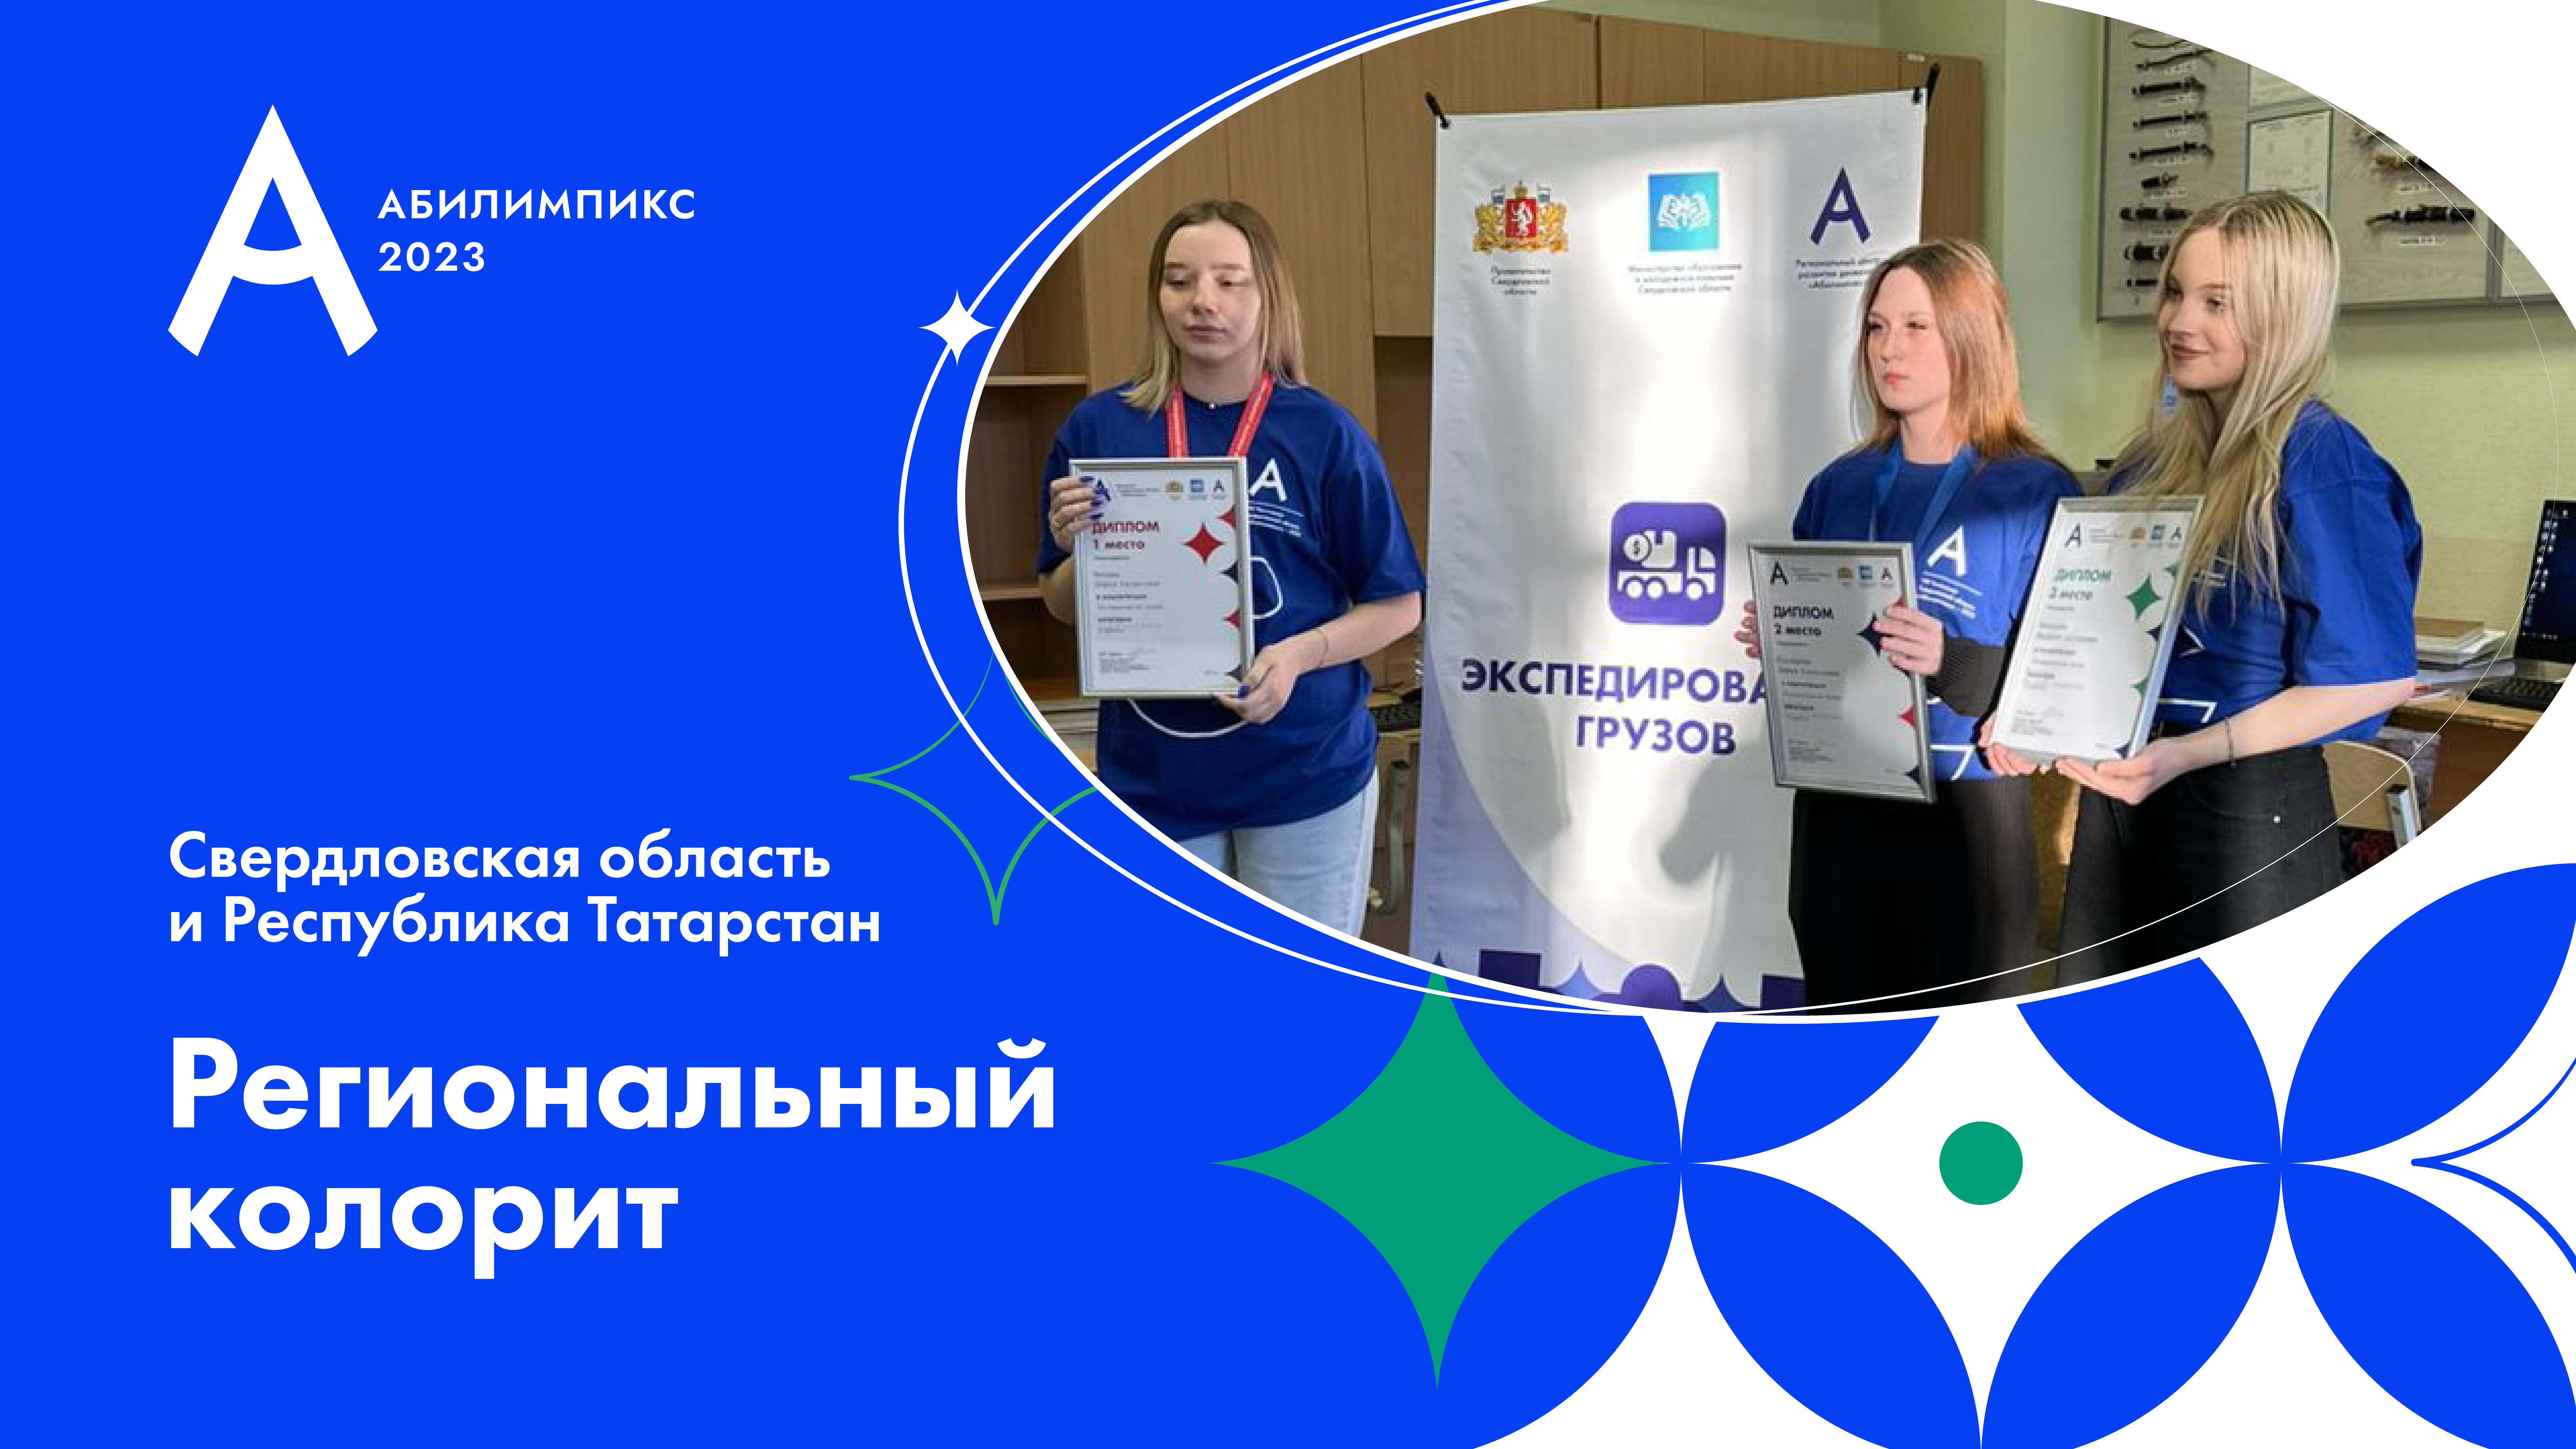 «Метрология», «Сити-фермерство» и «Экспедирование грузов» – новые компетенции Свердловской области